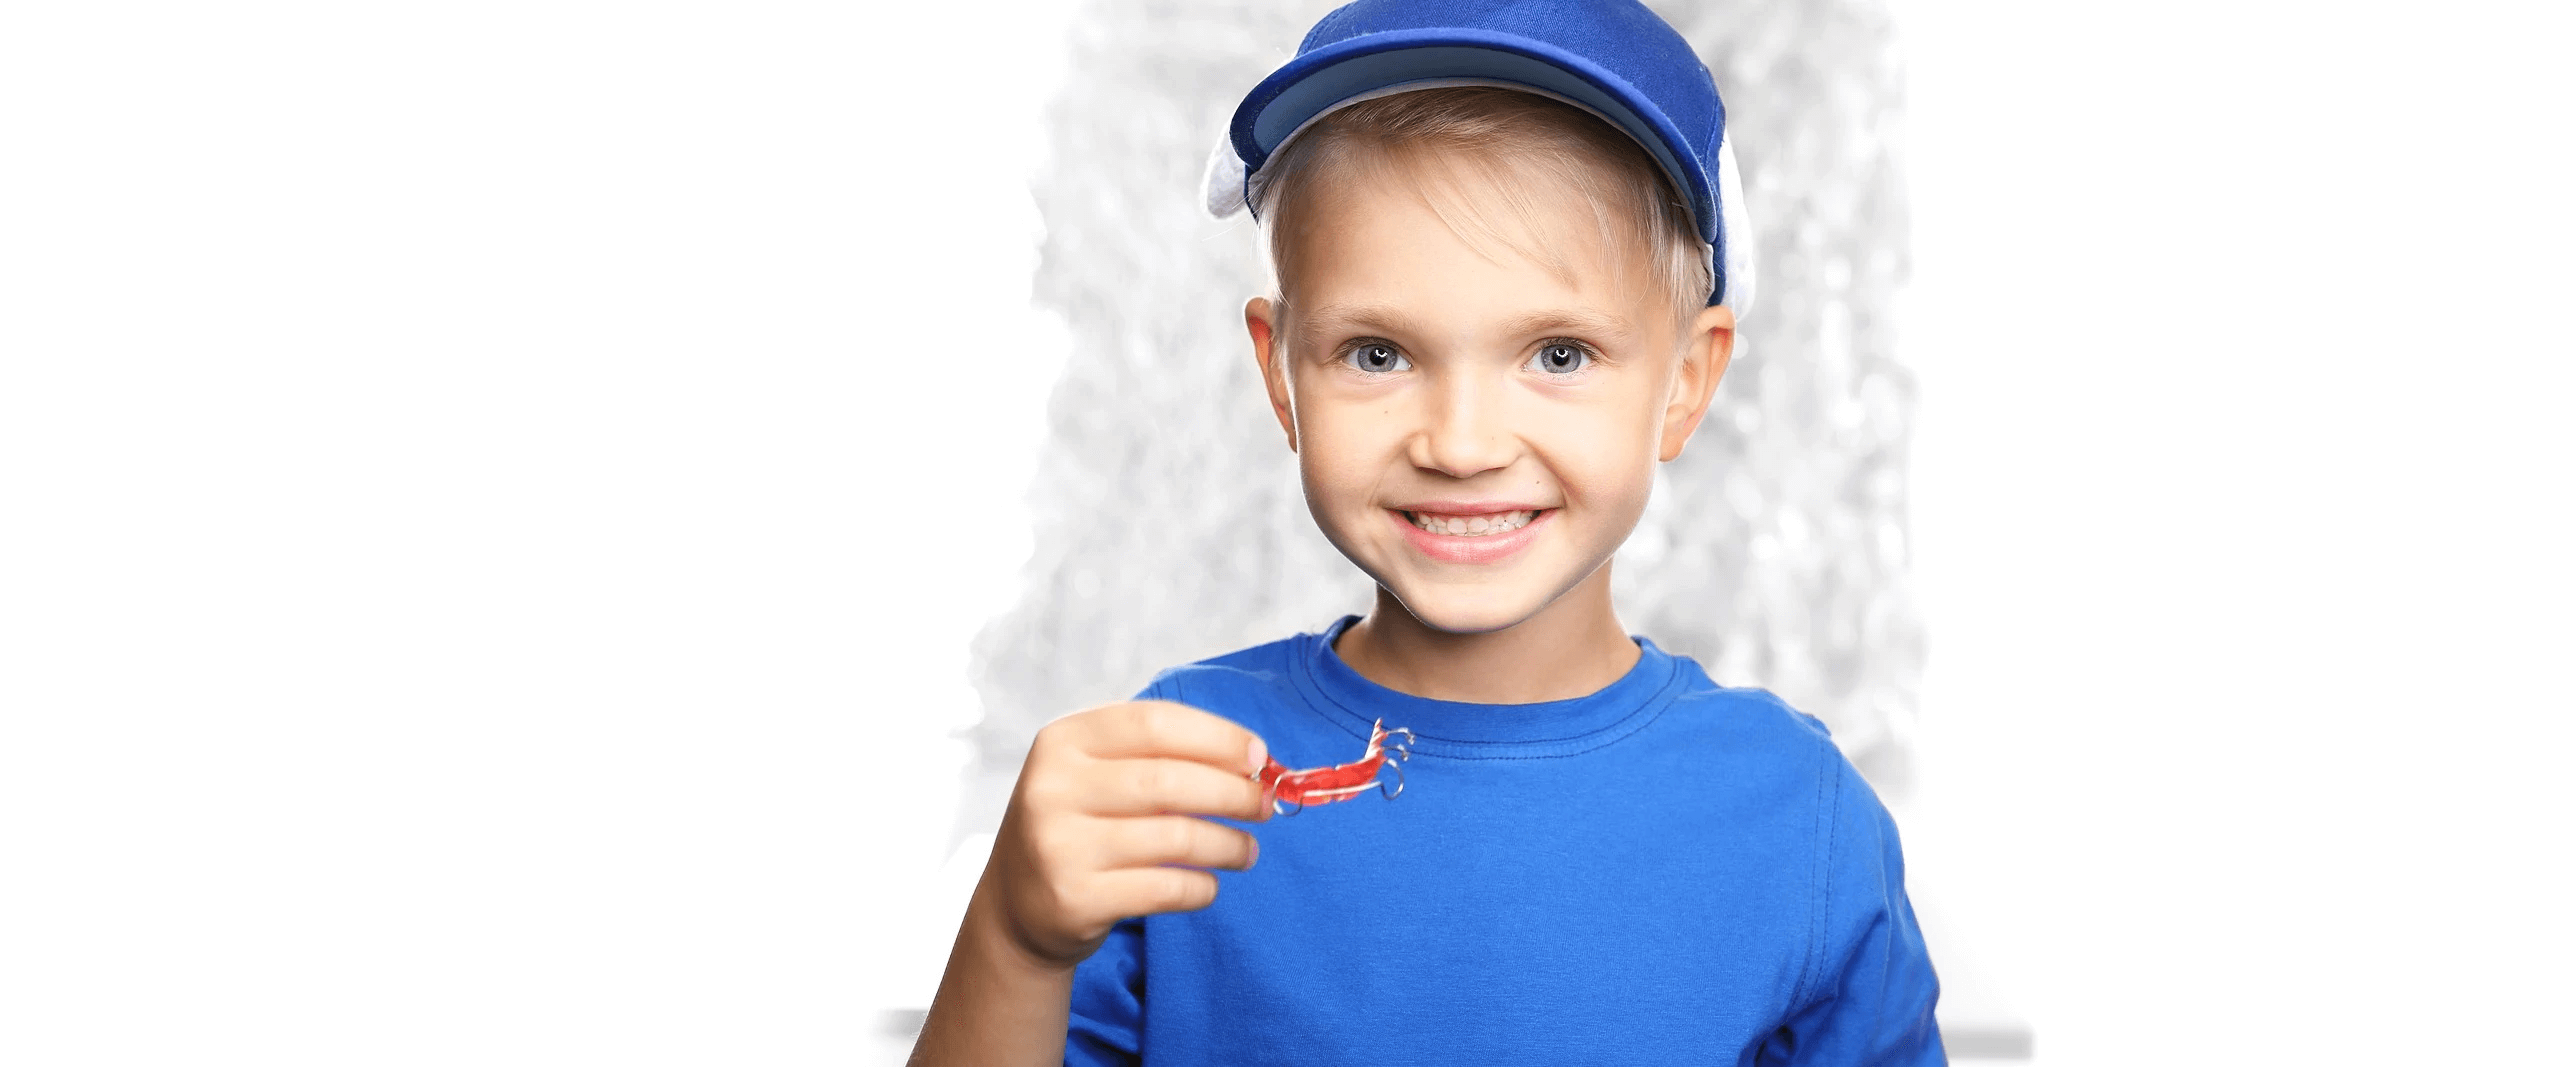 Chłopiec w niebieskim ubraniu z aparatem ortodontycznym ruchomym